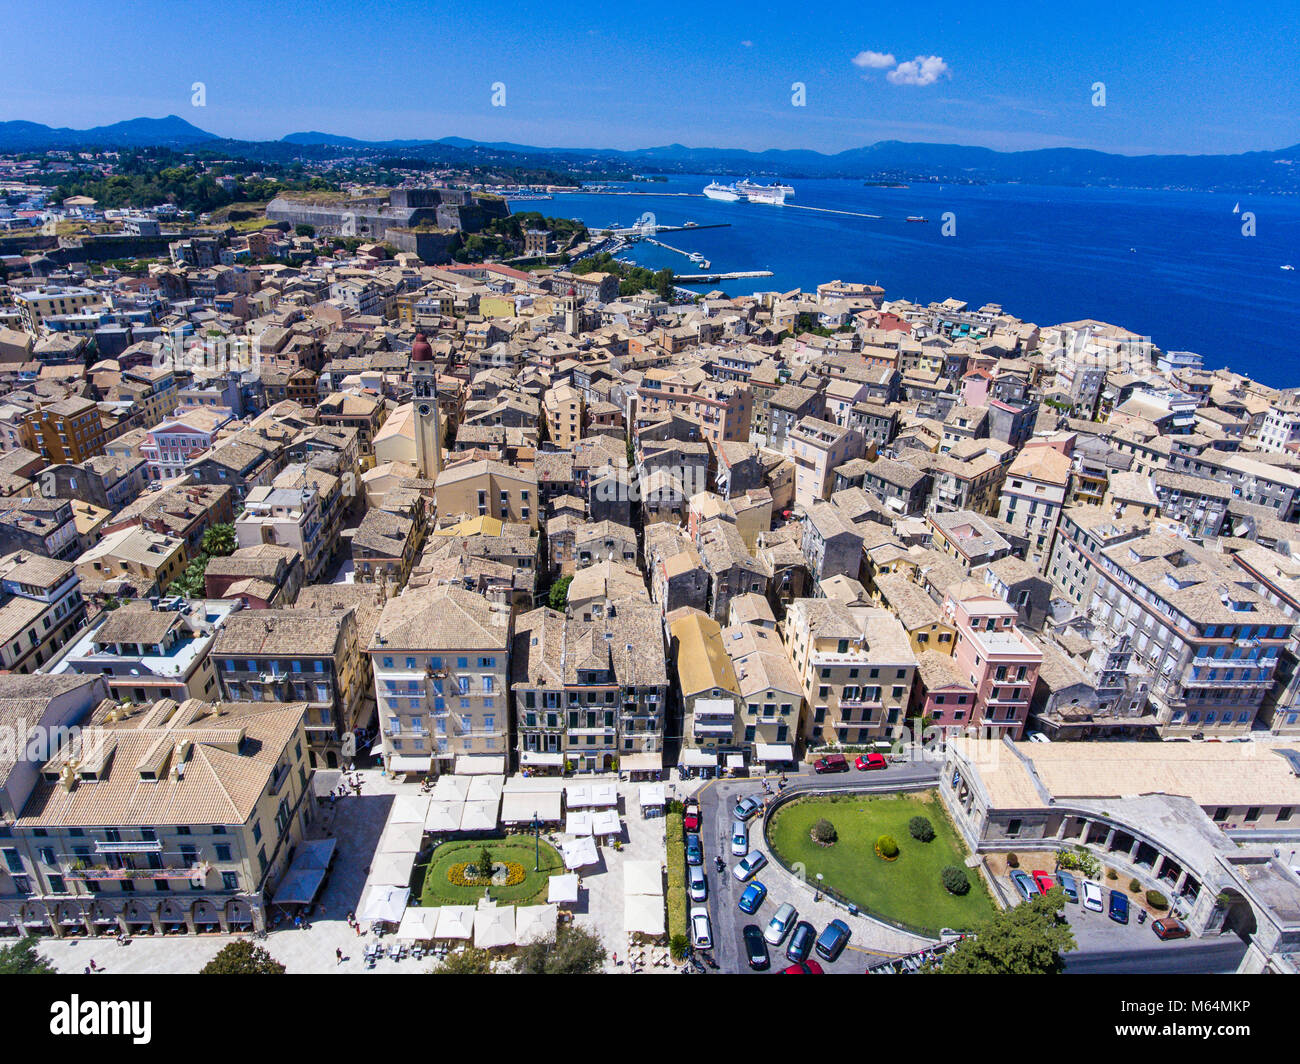 Corfù città vecchia da sopra. La capitale dell'isola Corfu, Grecia, l'Europa. Architettura Mediteraneean. Vecchia Fortezza visibile nella parte posteriore. Foto Stock